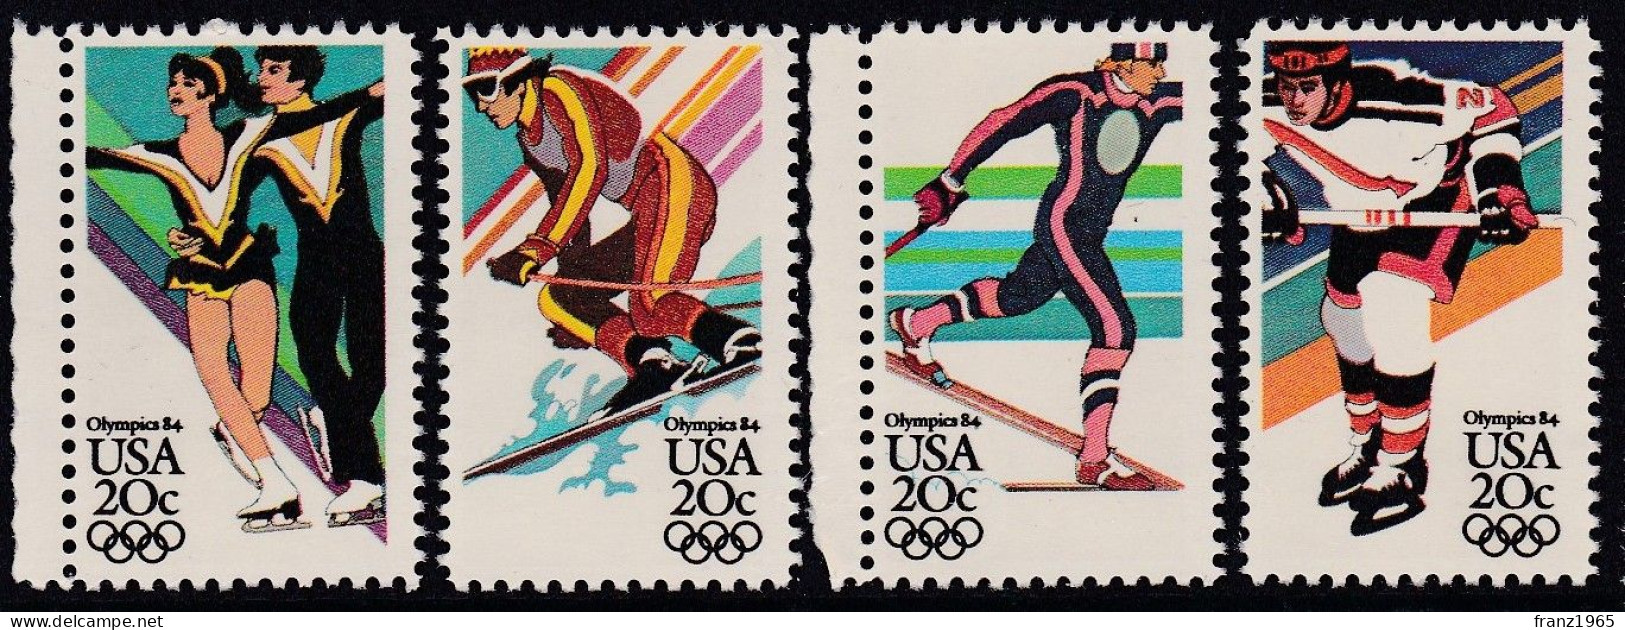 USA - Olympic Winter Games - 1984 - Inverno1984: Sarajevo